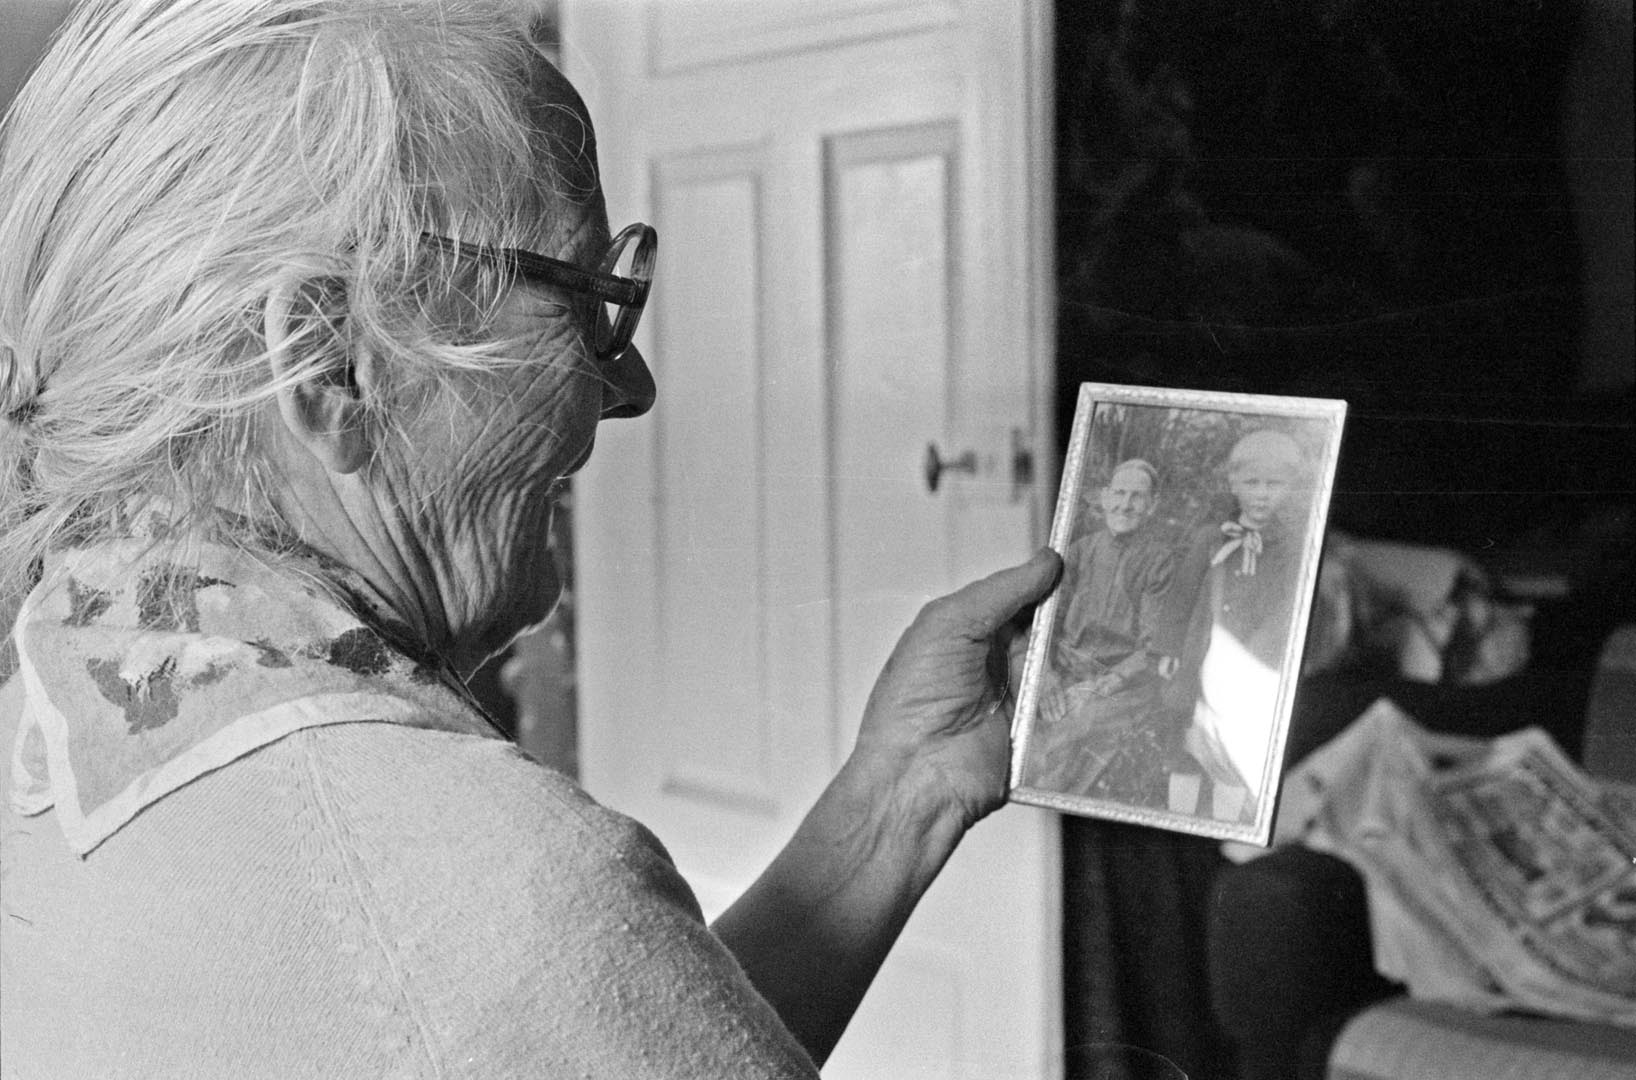 Vanha nainen pitelee kädessäänmustavalkoista valokuvaa naisesta ja lapsesta.